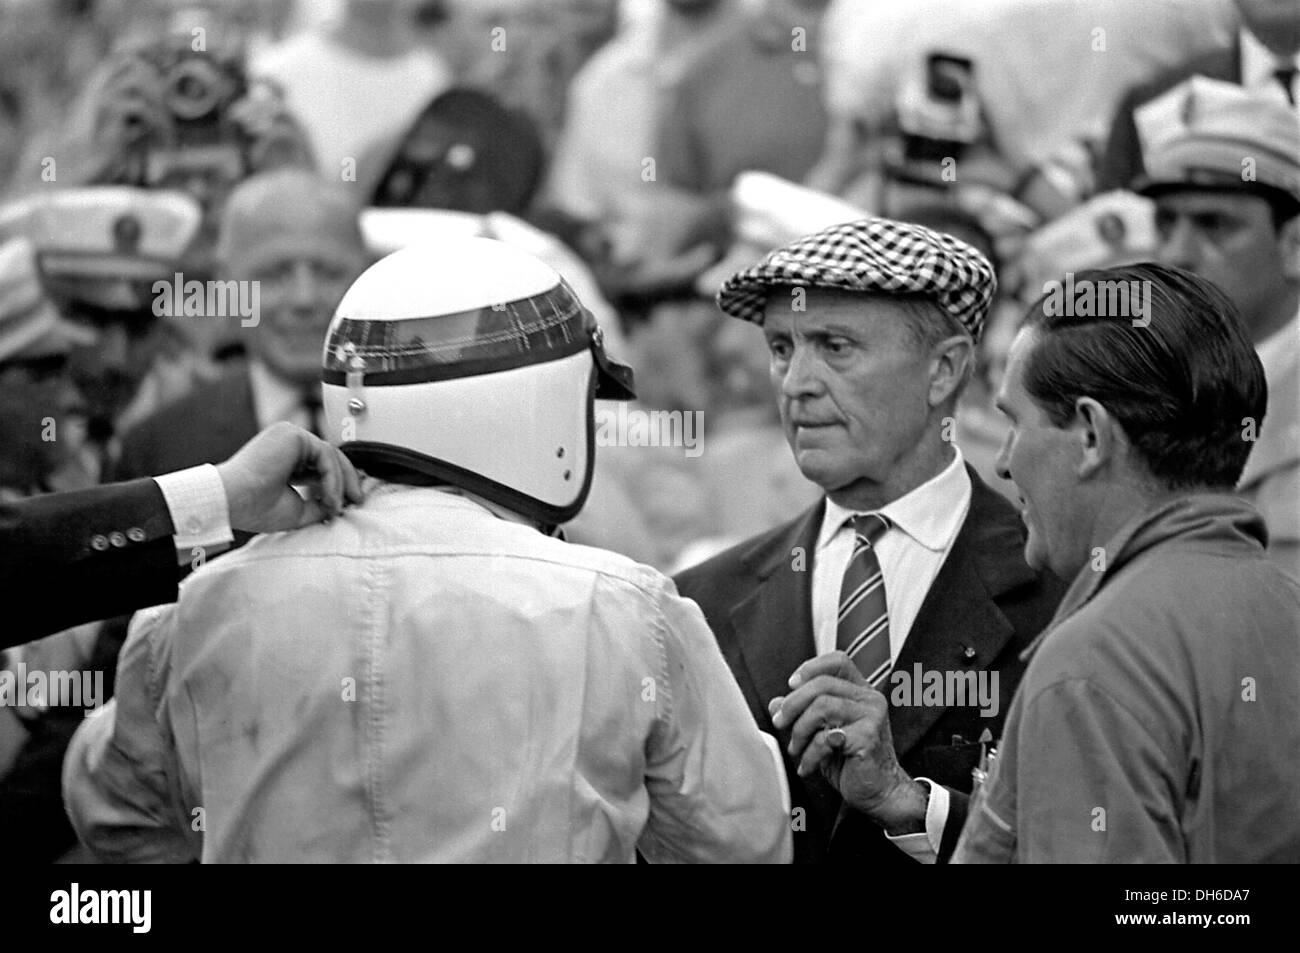 Stewart dopo aver vinto in un BRM, con Louis Chiron - pre-war star driver che dirigeva la gara post-guerra. GP di Monaco il 22 maggio 1966. Foto Stock